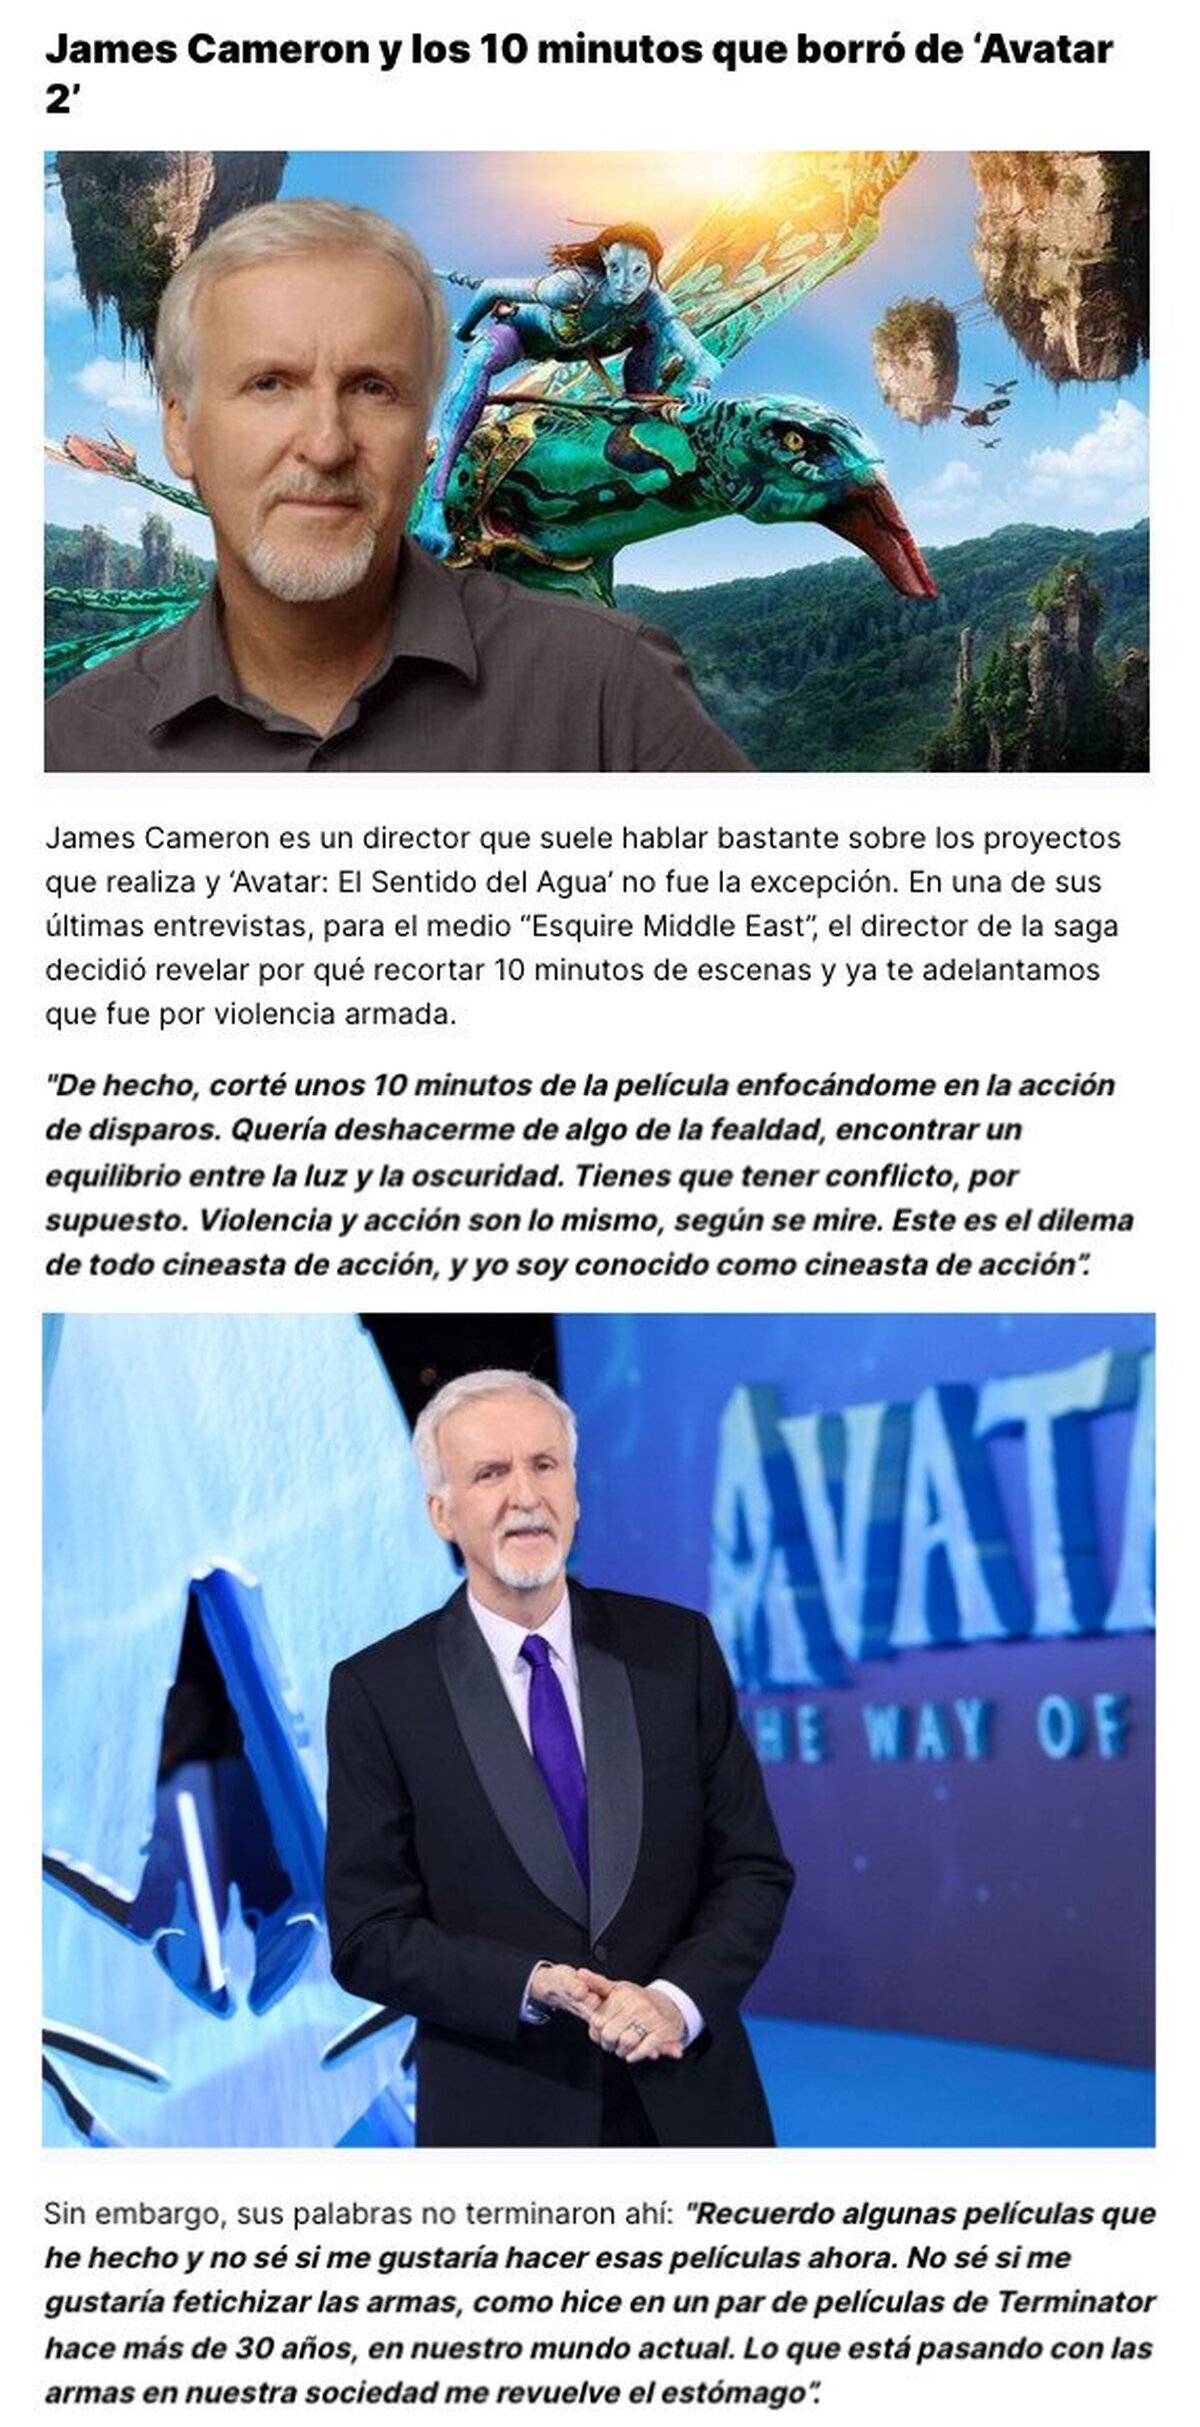 GALERÍA: El motivo por el que James Cameron borró 10 minutos de la película